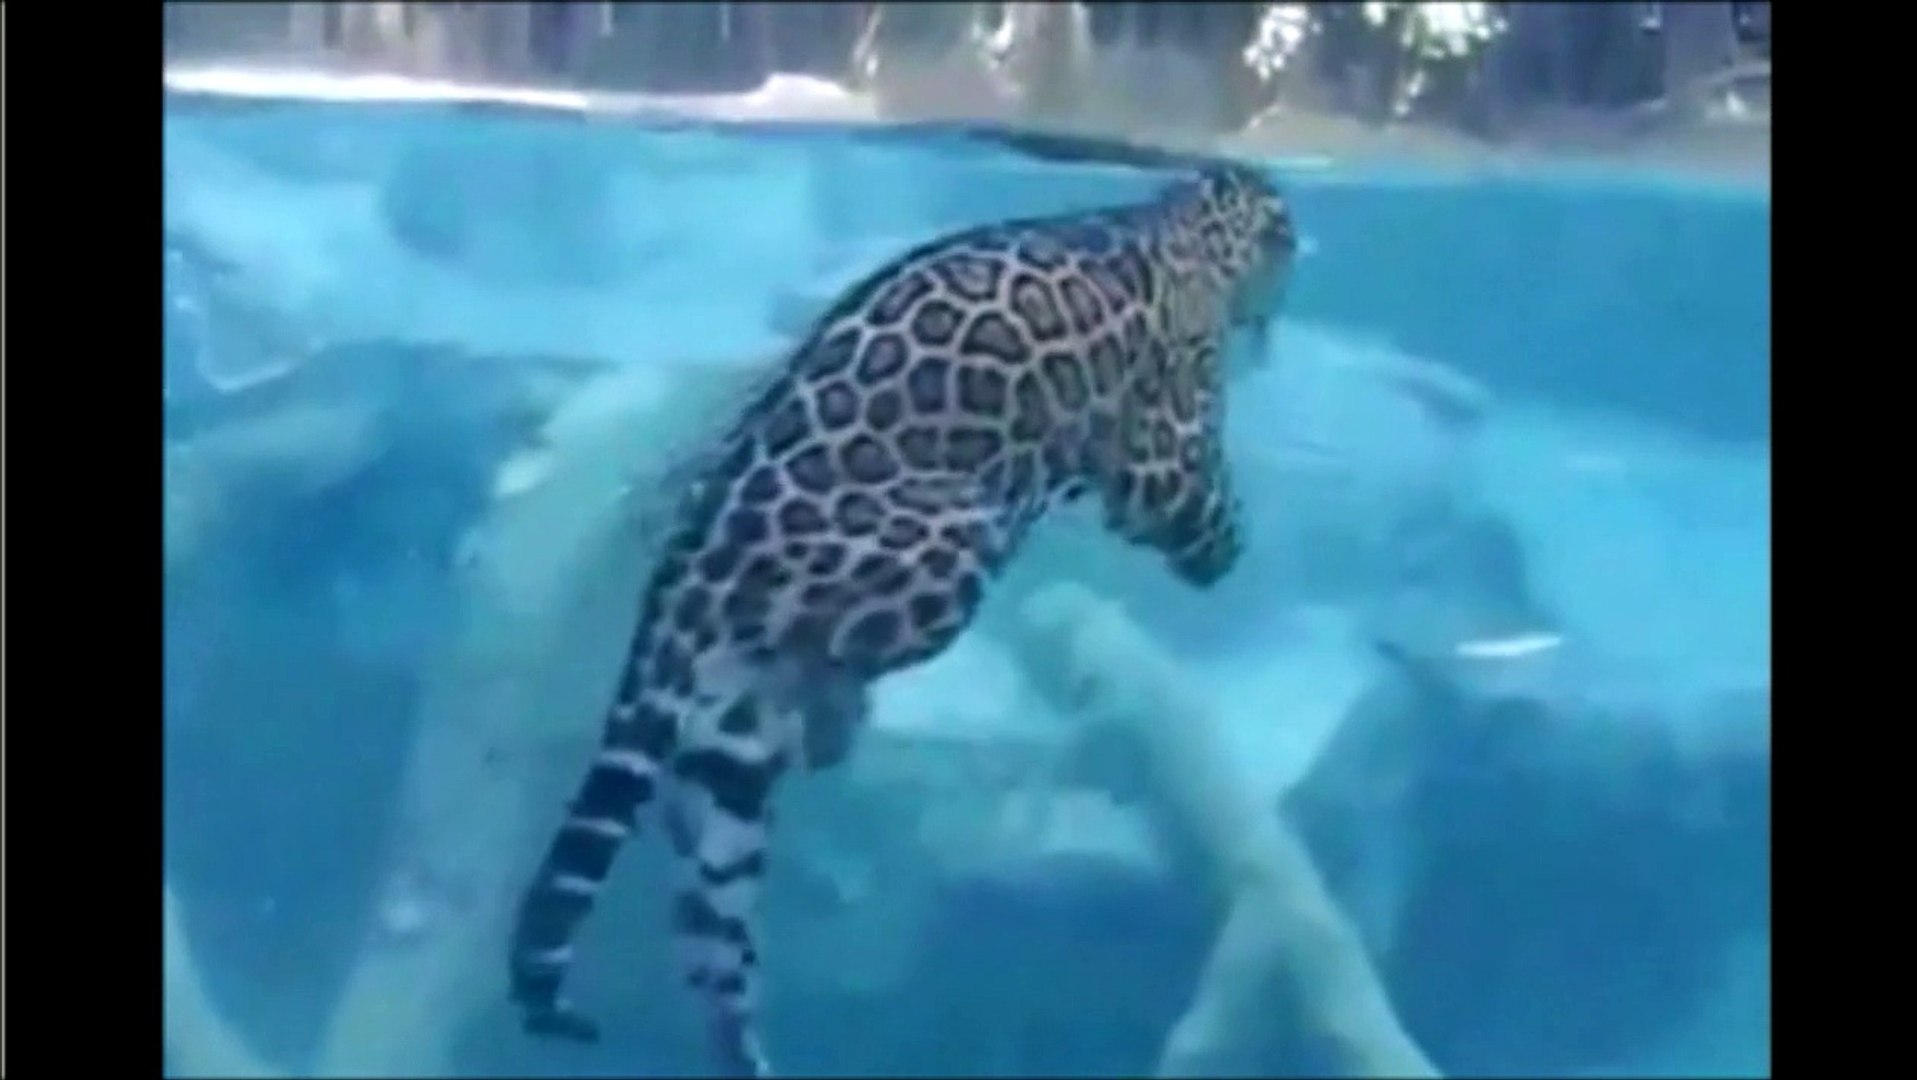 Regardez ce jaguar chasser sous l'eau - Vidéo Dailymotion